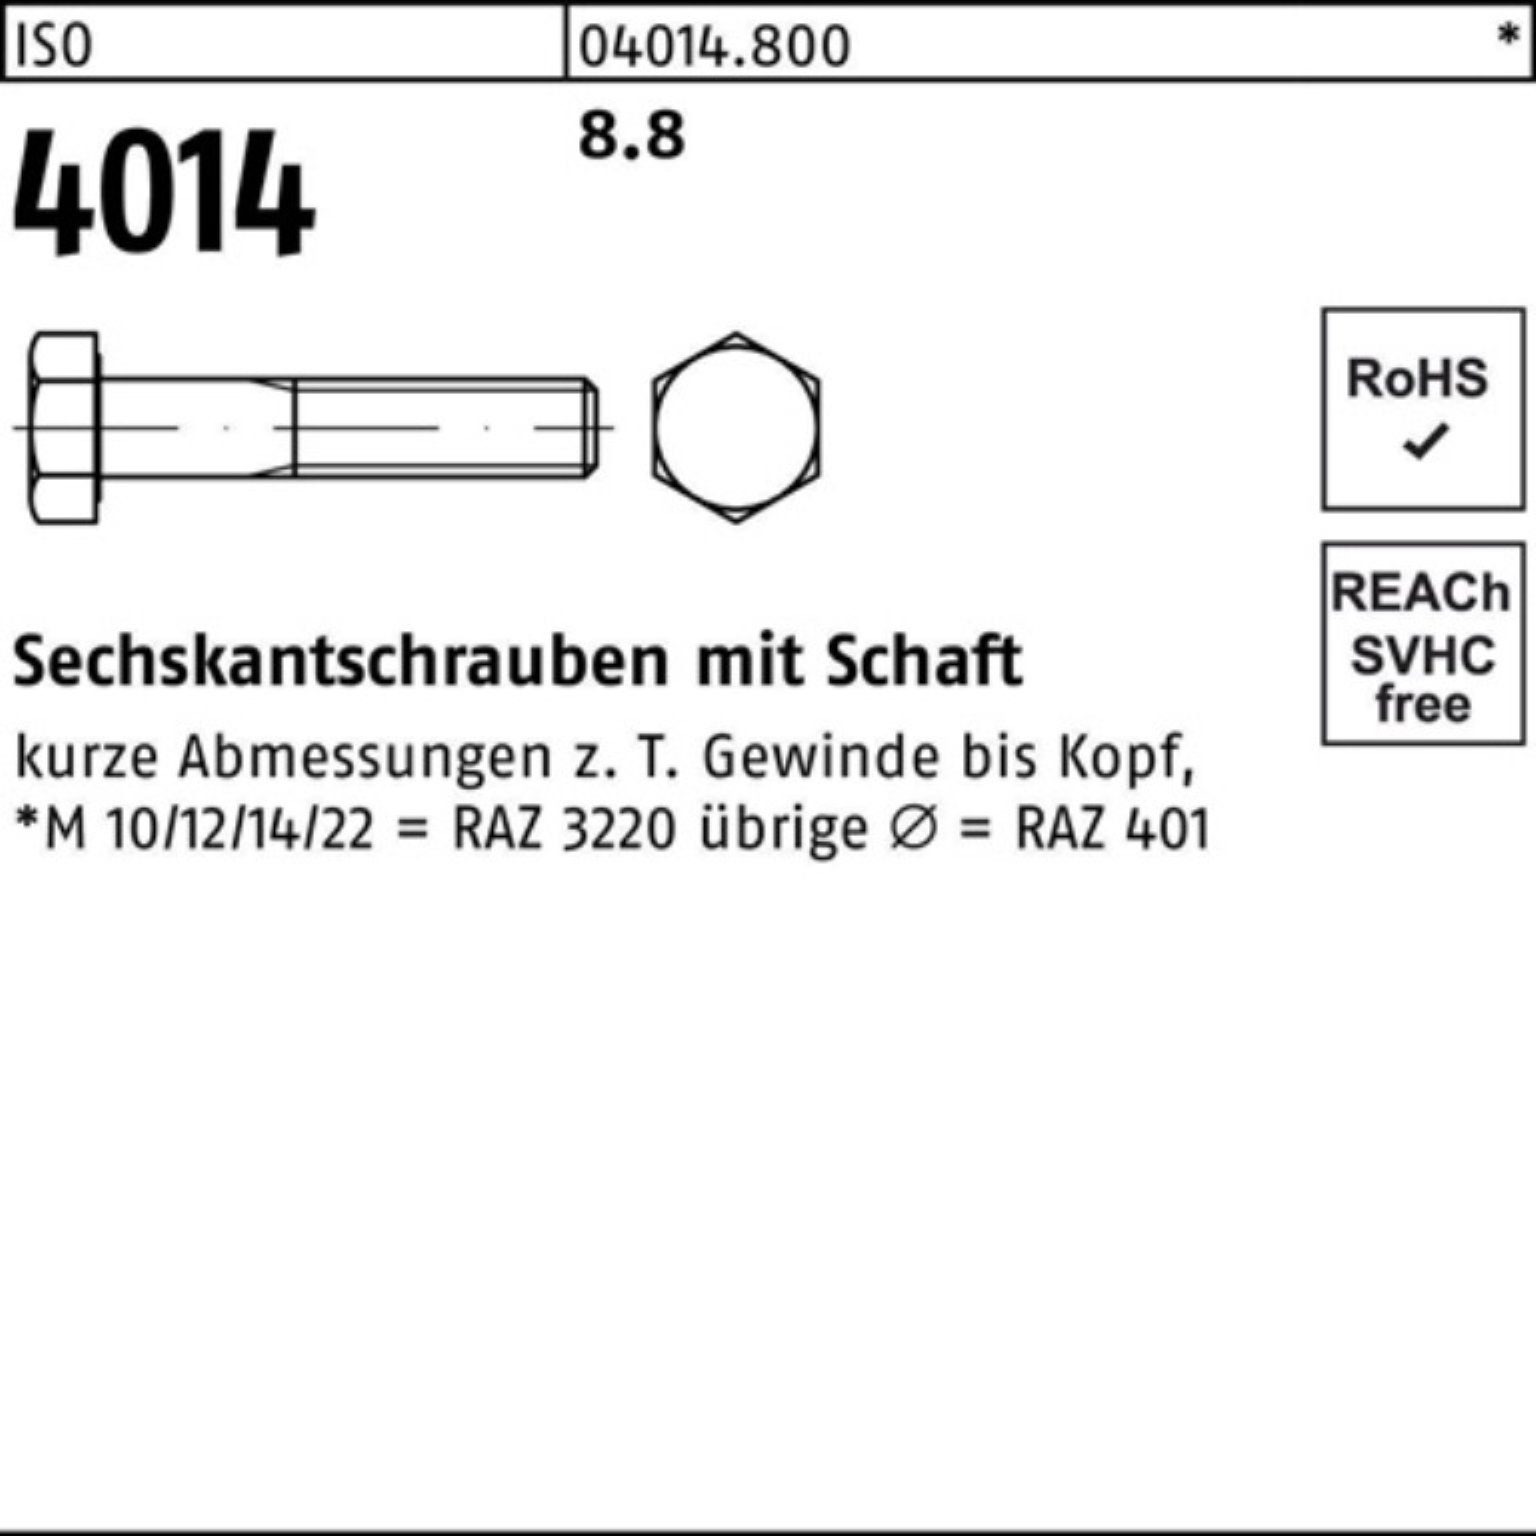 Bufab Sechskantschraube 1 M64x Stück Schaft 4014 ISO 300 Sechskantschraube 100er Pack 8.8 ISO